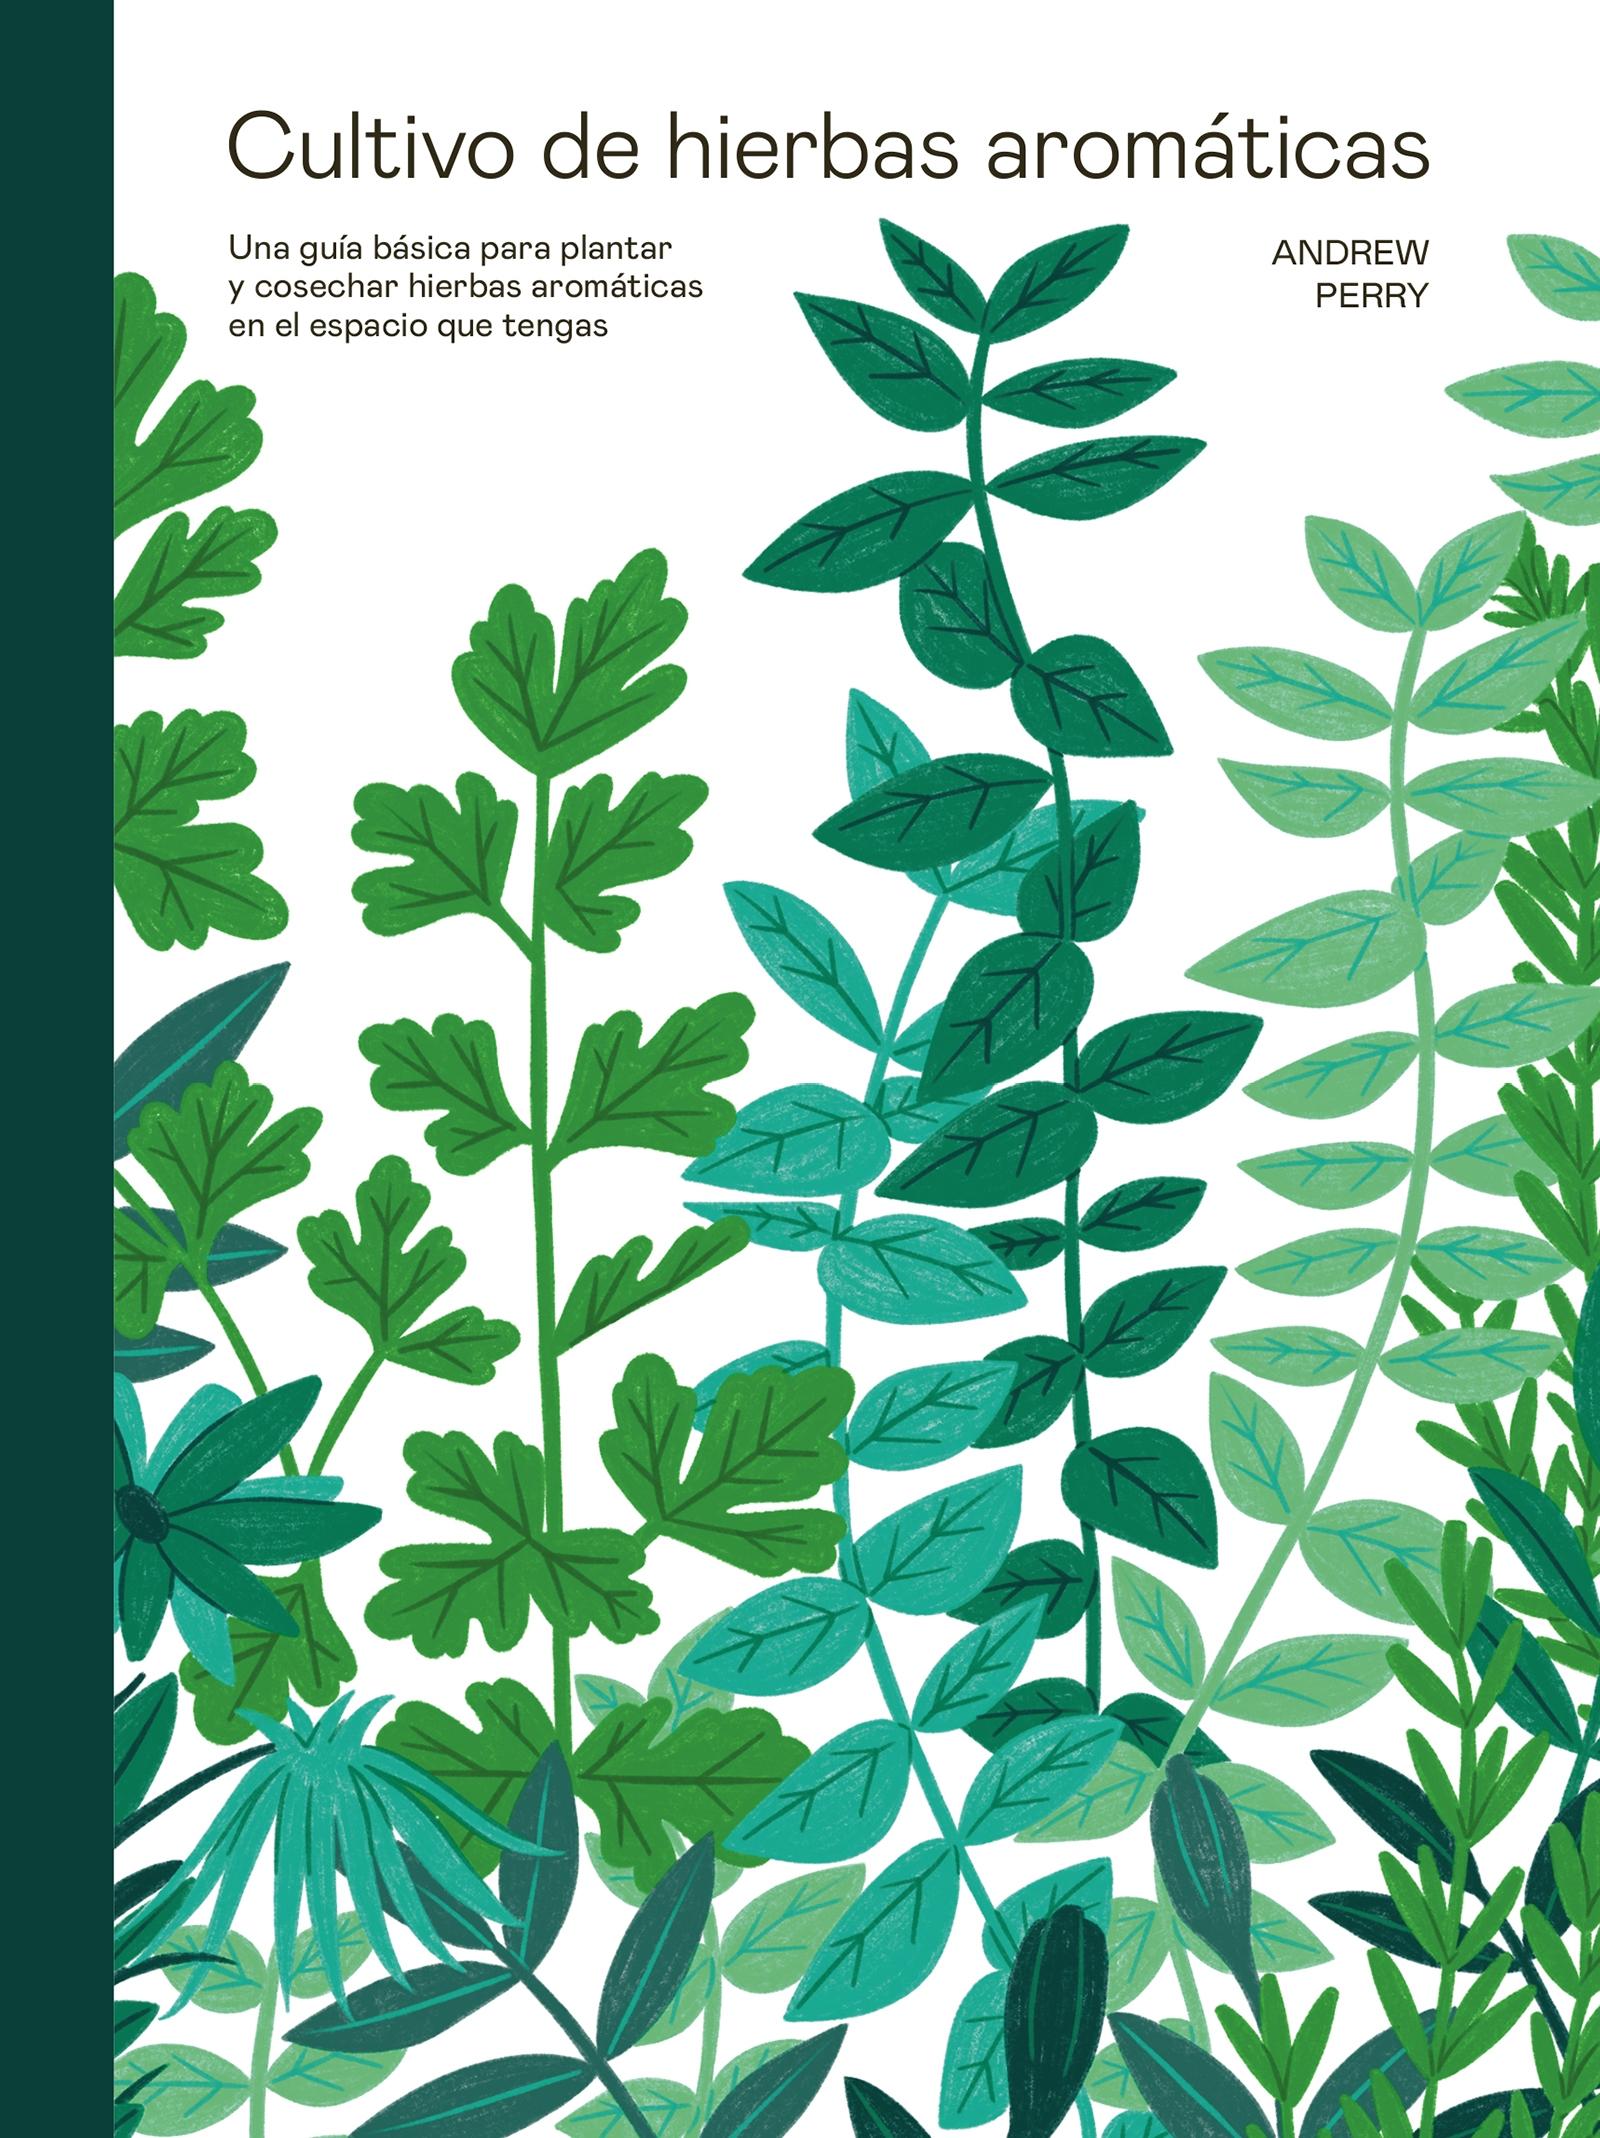 Cultivo de hierbas aromáticas "Una guía básica para plantar y cosechar hierbas aromáticas en el espacio"